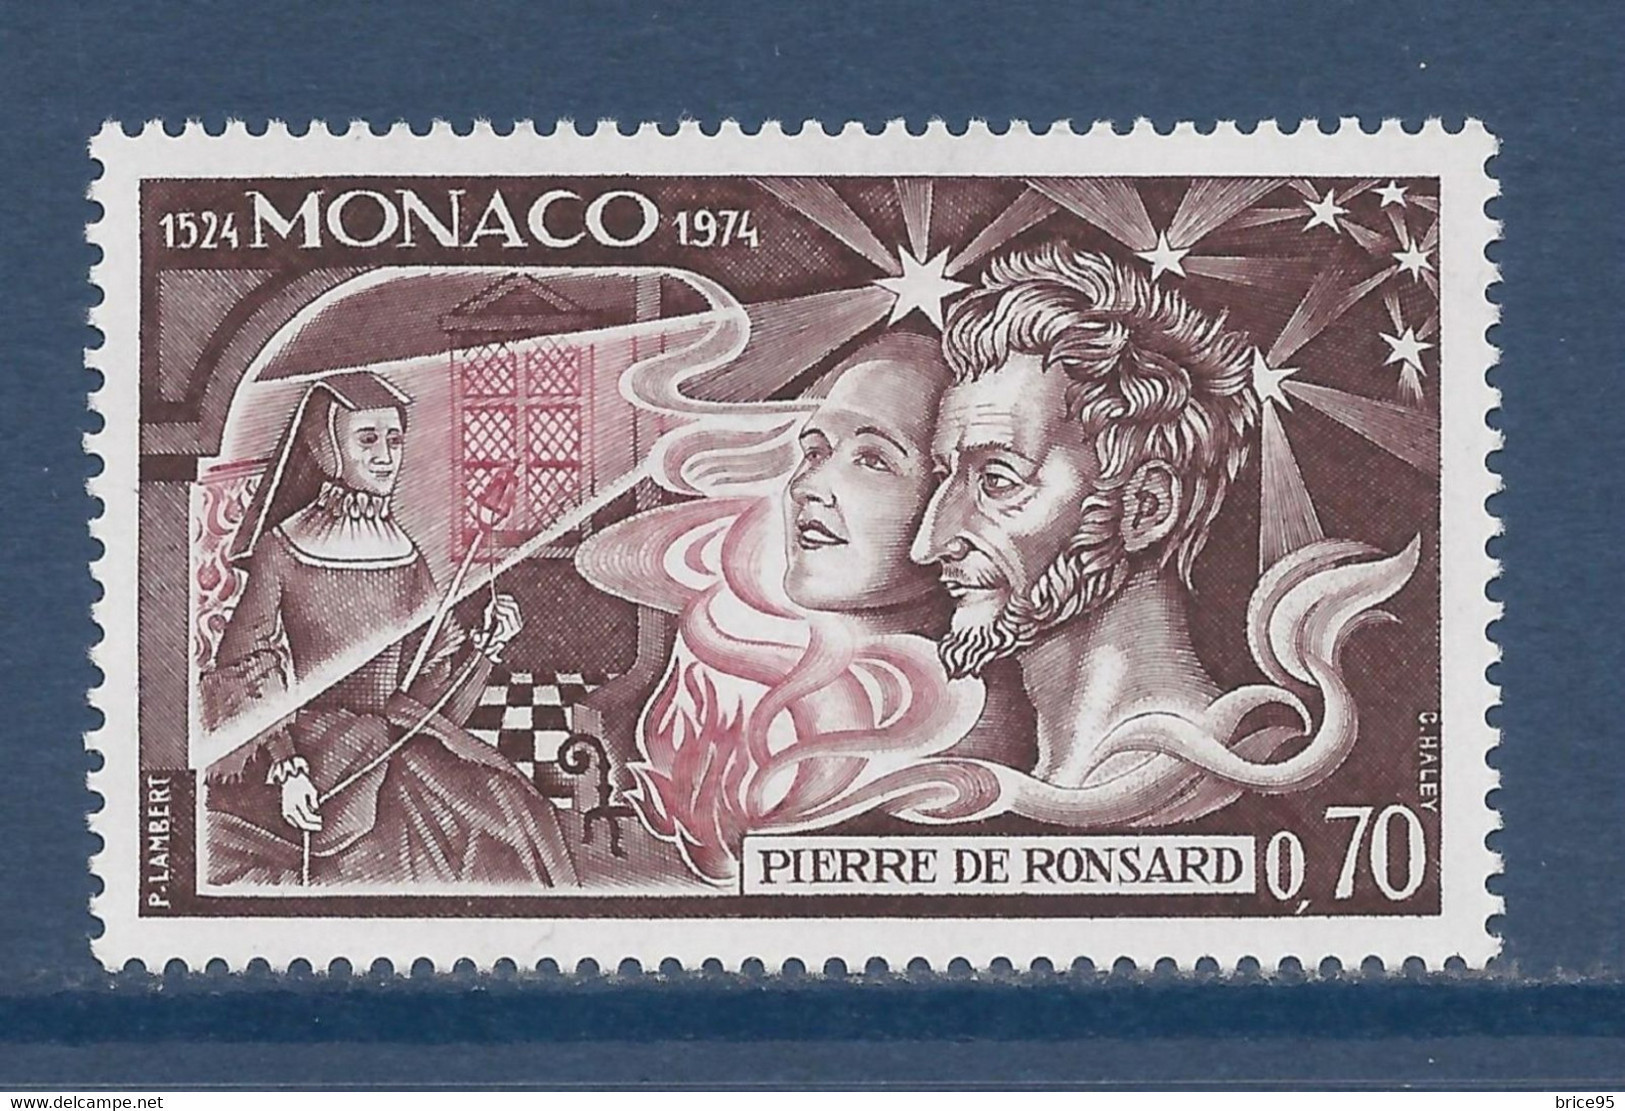 Monaco - Yt N° 964 ** - Neufs Sans Charnière - 1974 - Unused Stamps